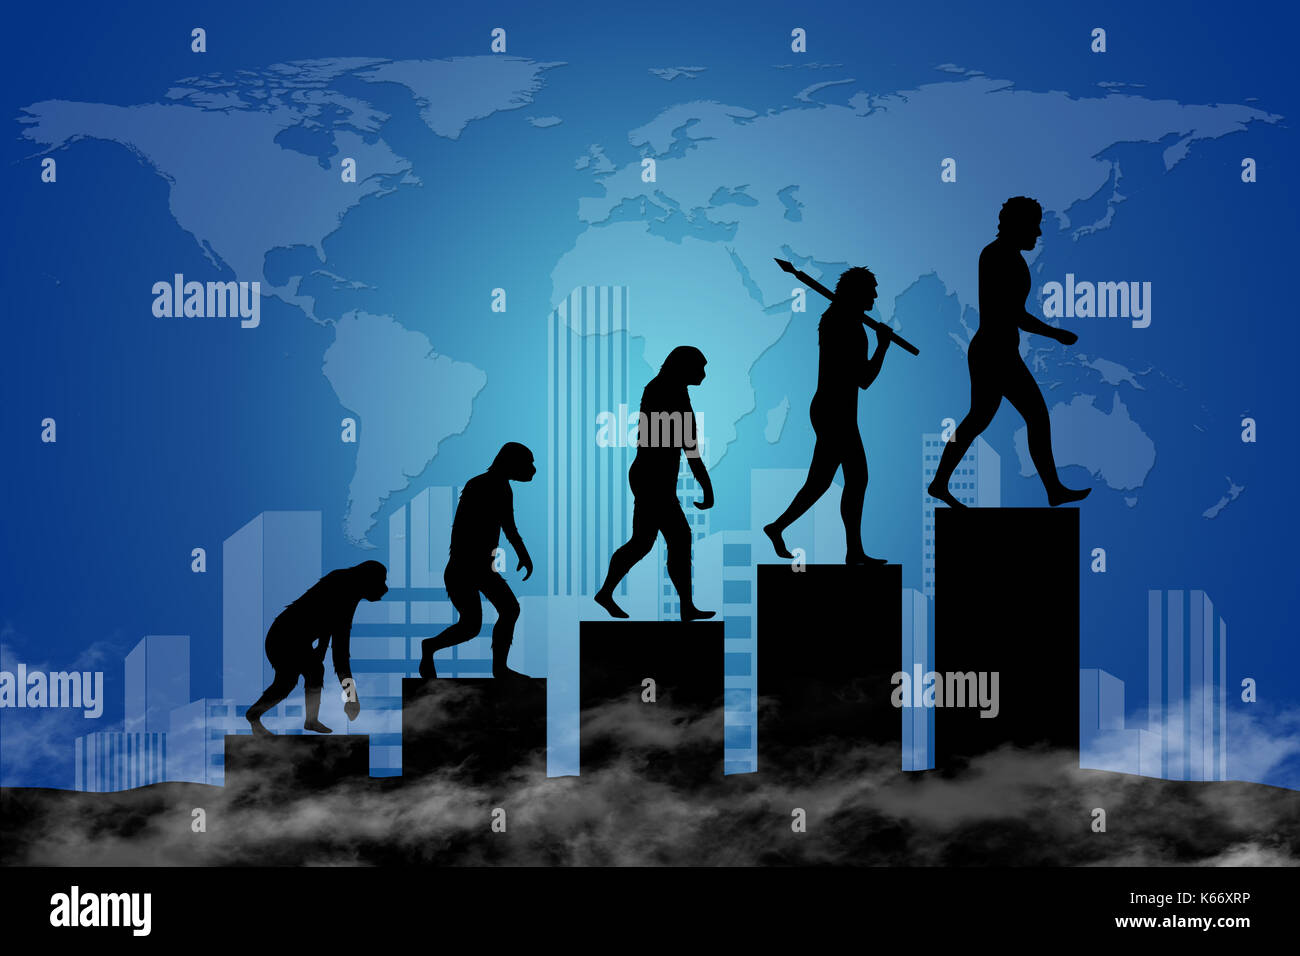 Die Evolution des Menschen in einer modernen Welt der digitalen Technologie. Stadt-Scape und die Weltkarte im Hintergrund. Stockfoto